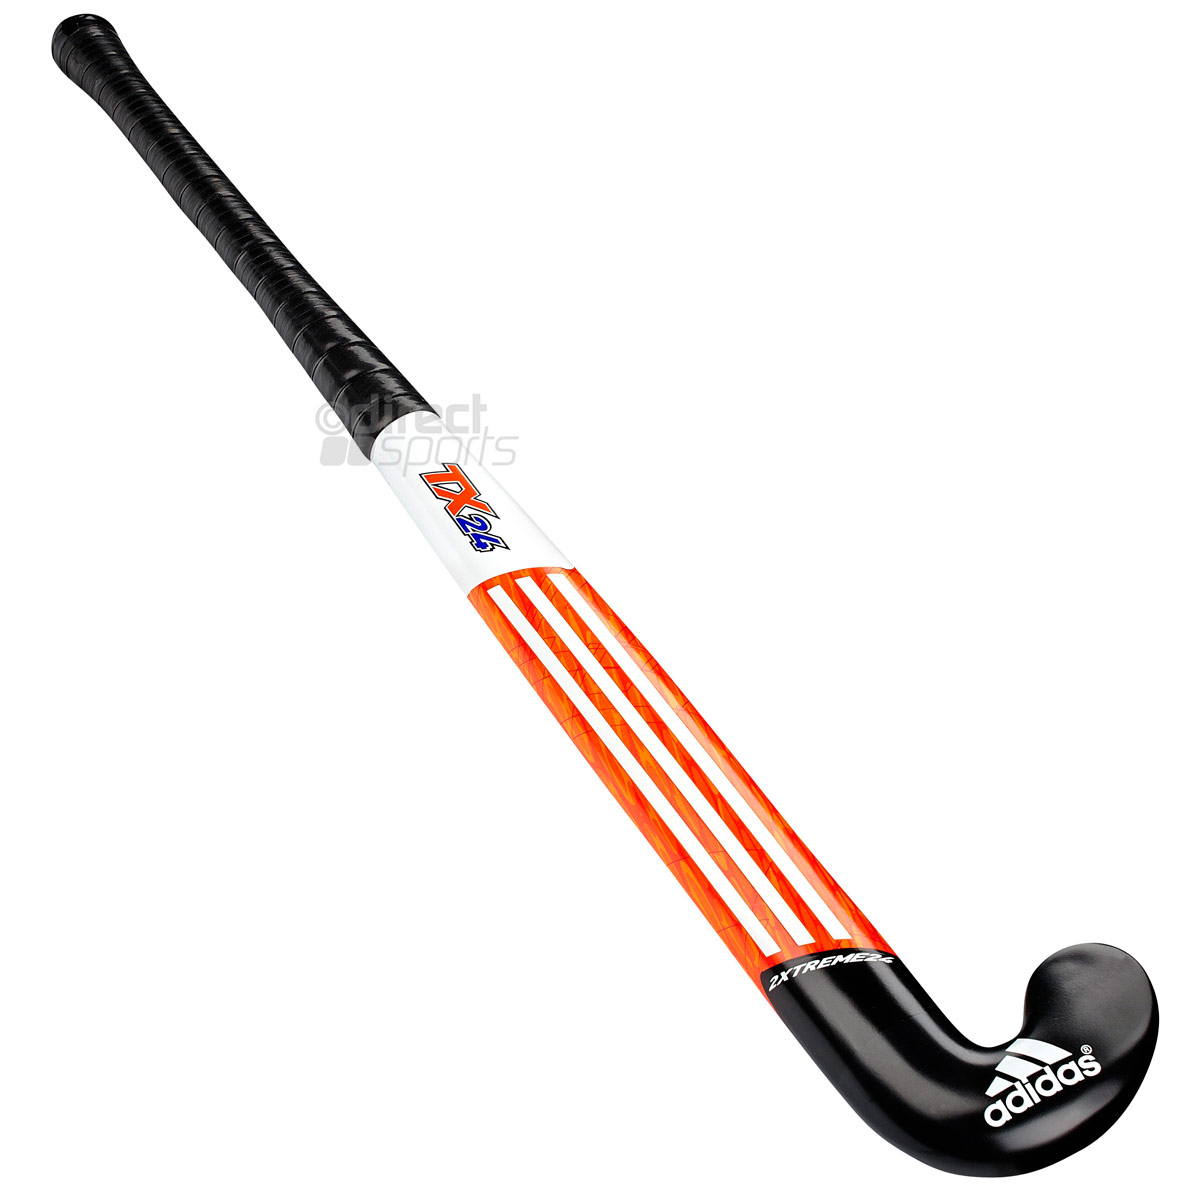 New Adidas Xxtreme Field Hockey Stick Ebay